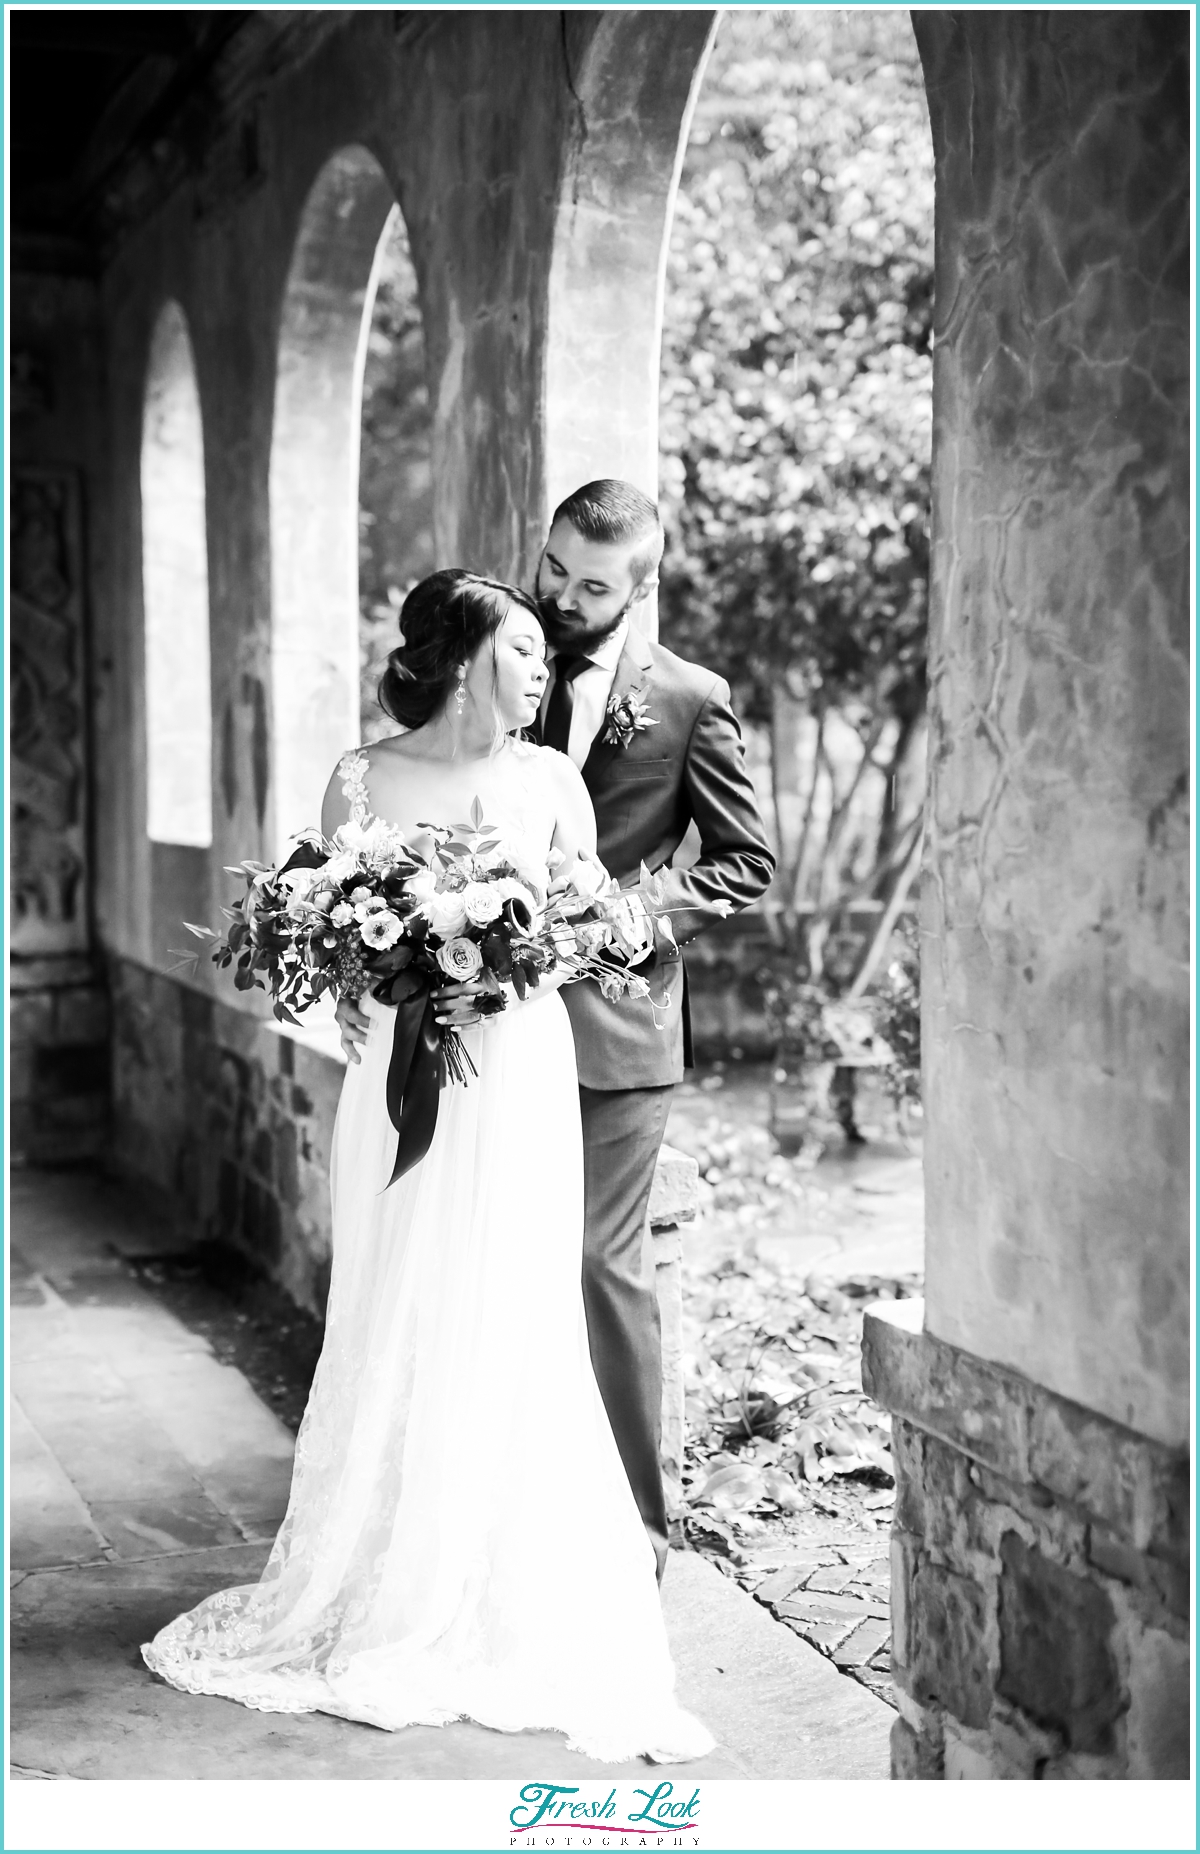 black and white wedding photo ideas